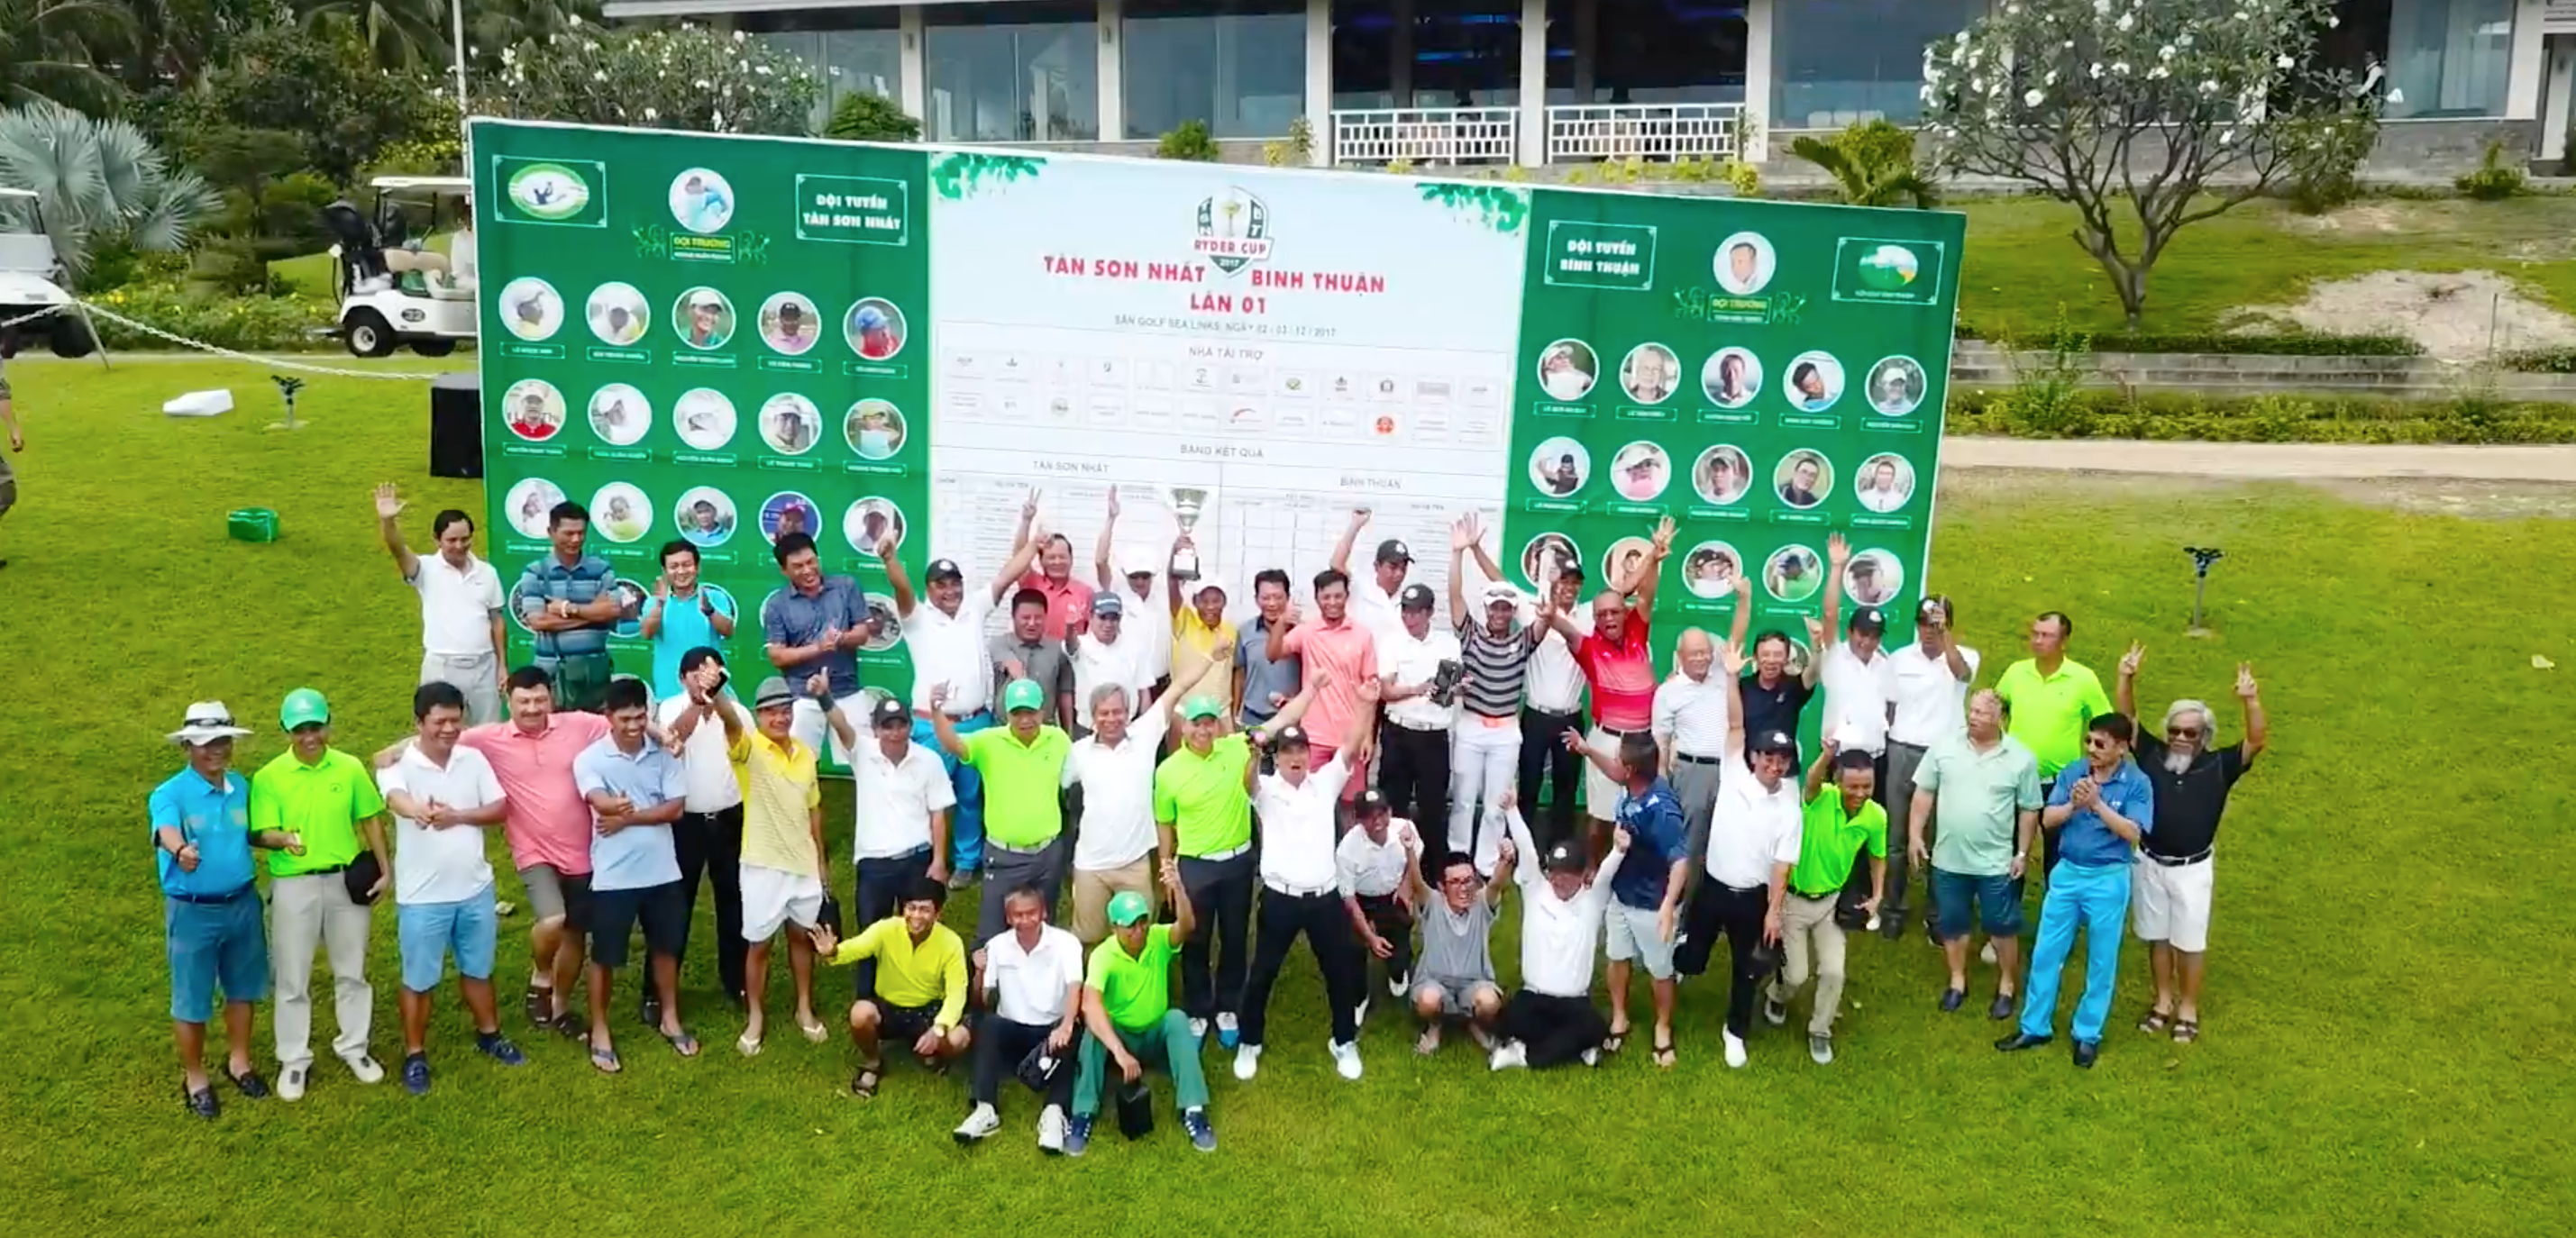 Ryder Cup CLB Tân Sơn Nhất - Bình Thuận lượt về: Anh tài phân tranh